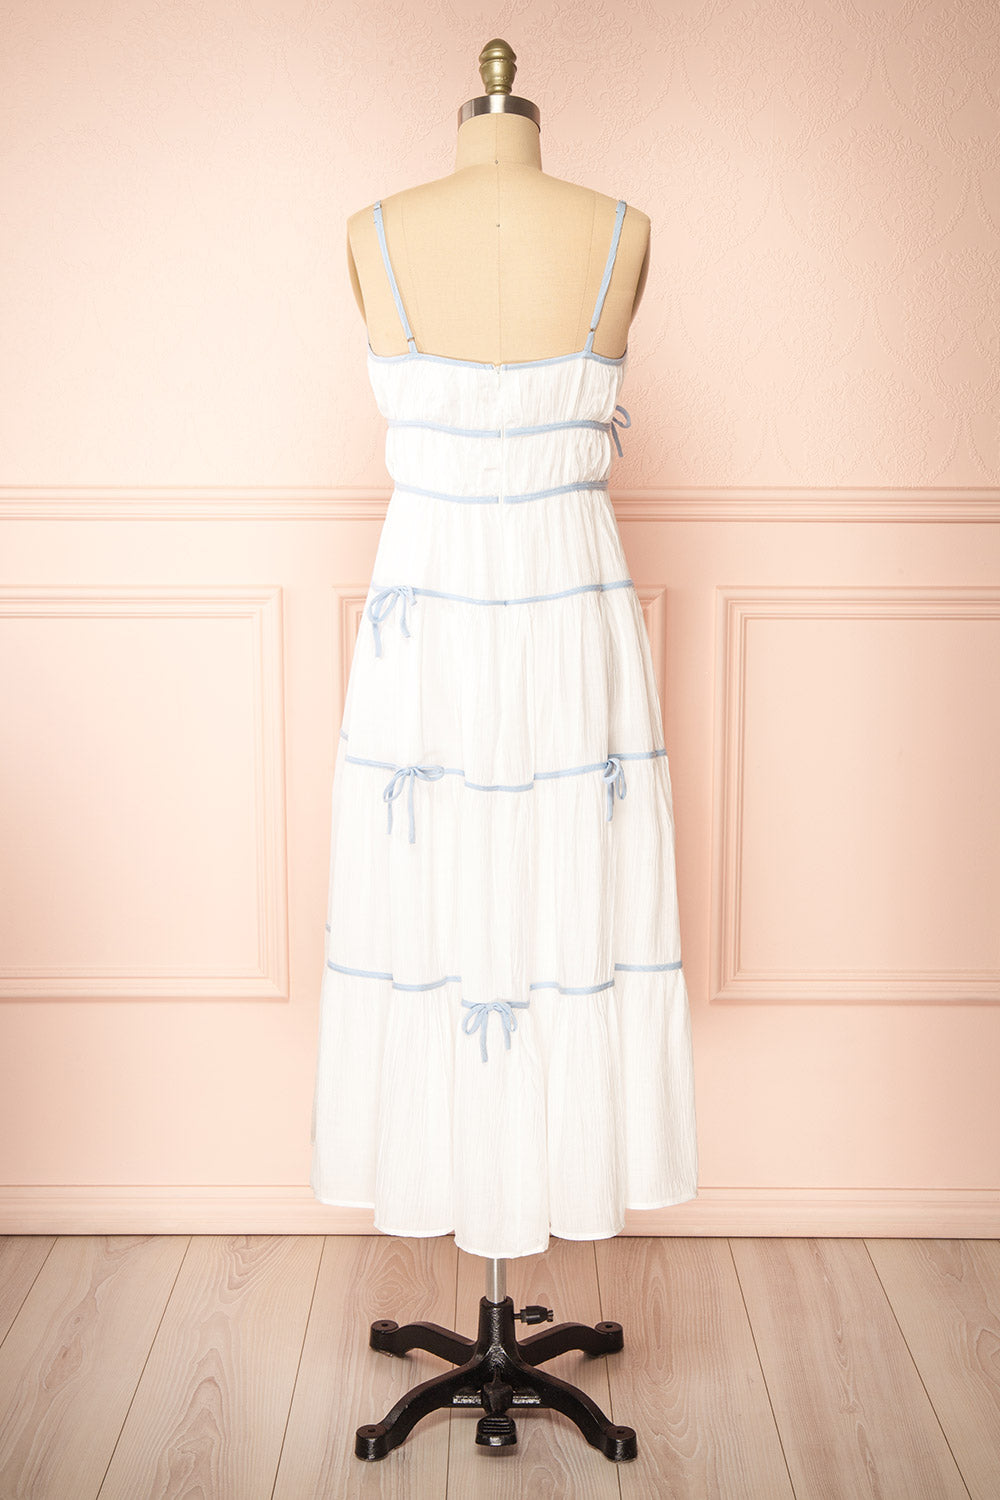 Juliriel White Midi Dress w/ Blue Ribbons | Boutique 1861 back view